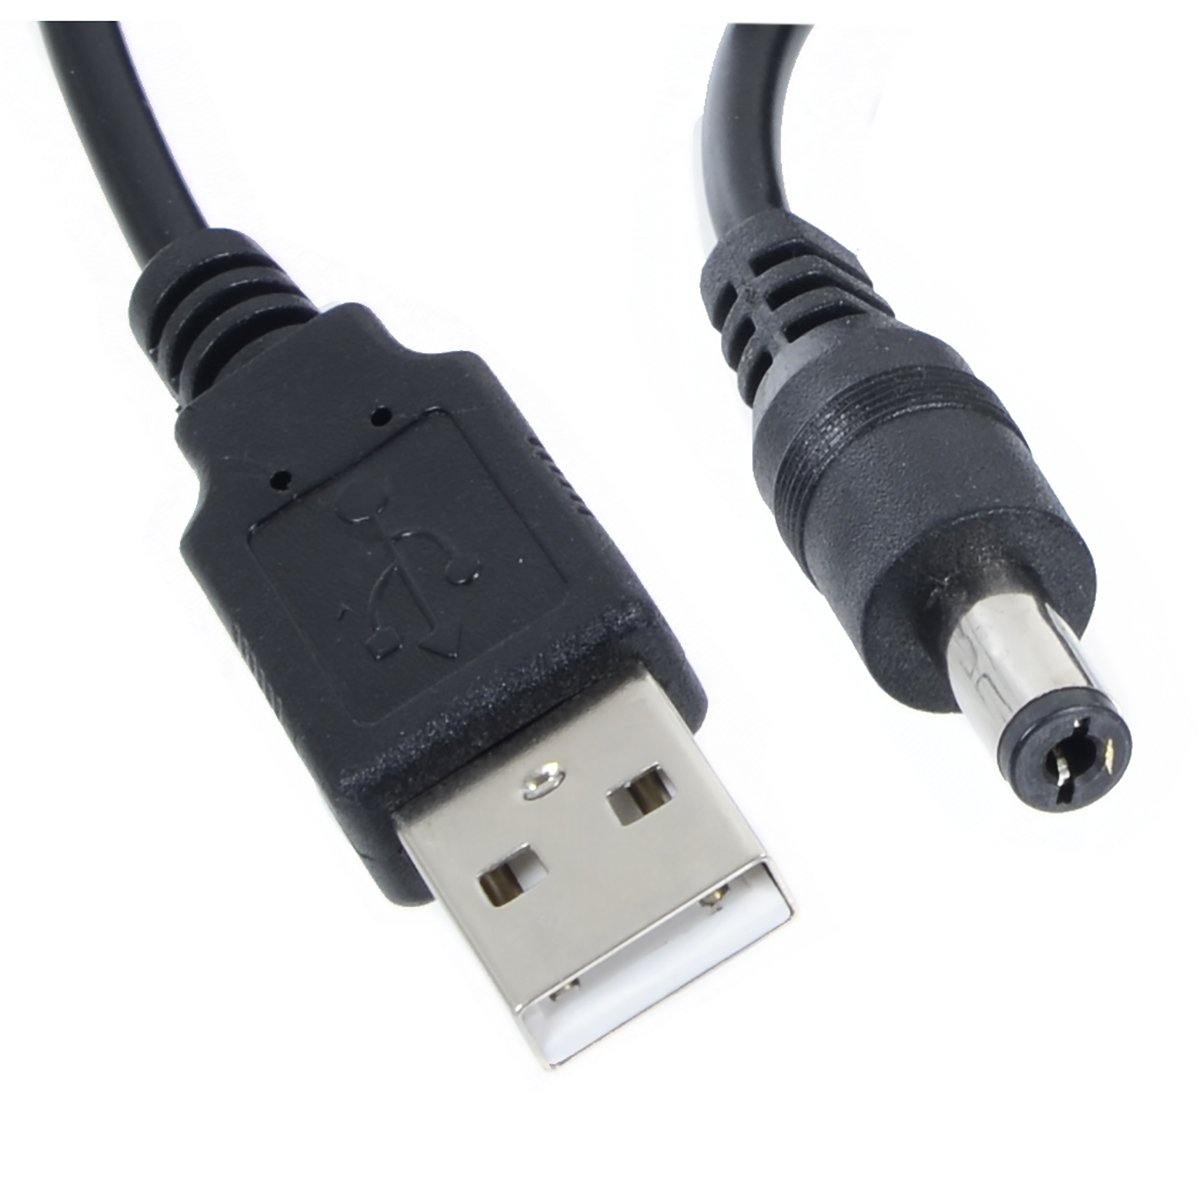 Mr Crimbo 3m Extra Long USB to 5mm DC Jack Power Cable Black - MrCrimbo.co.uk -XS6535 - -usb cable